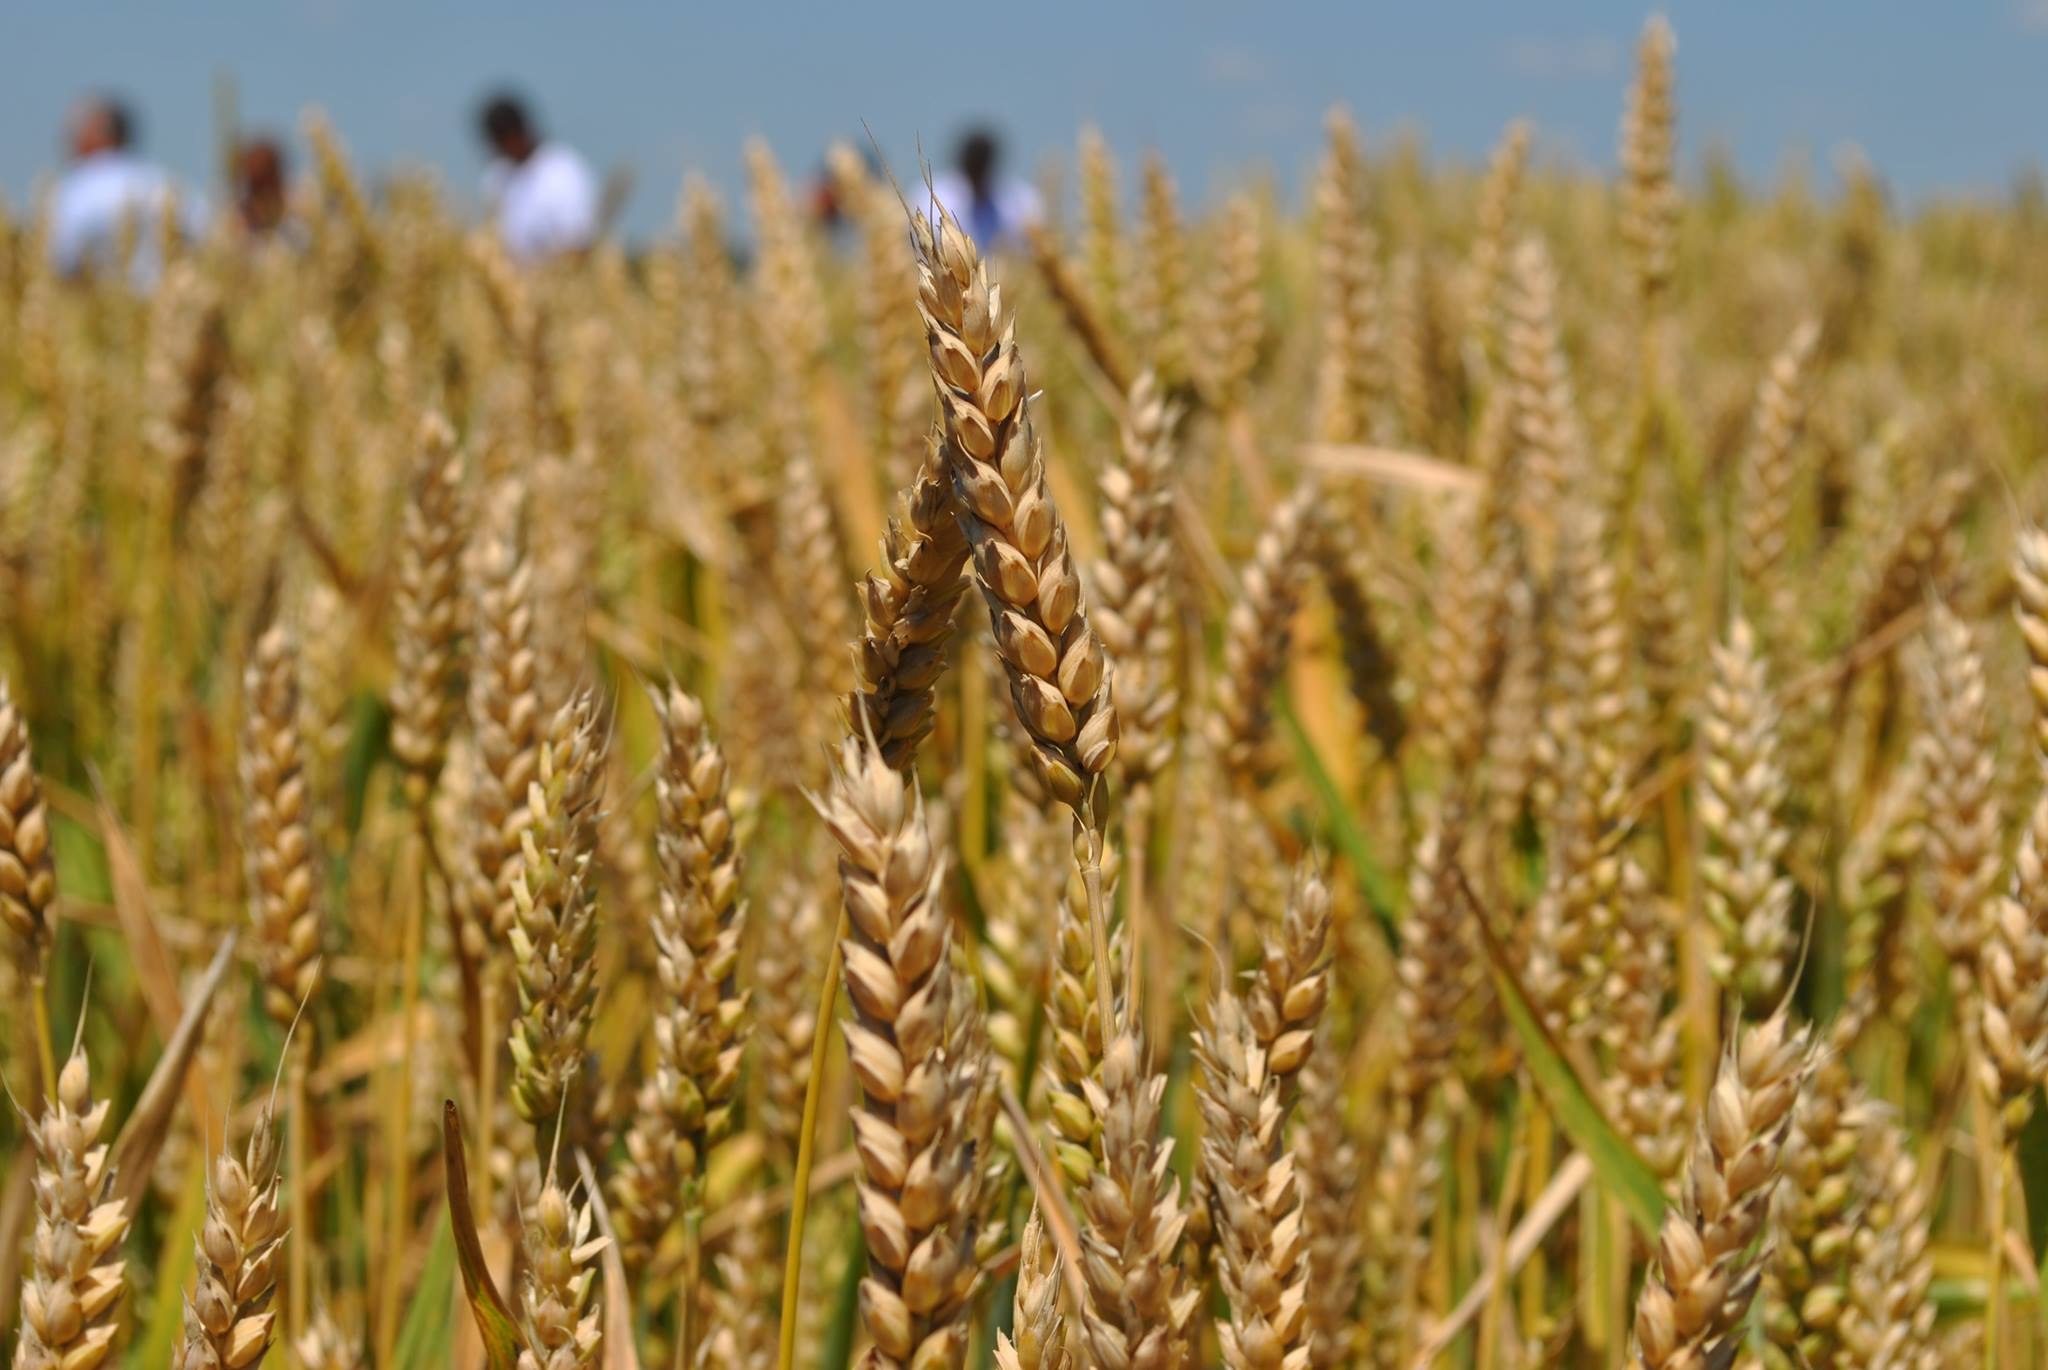  Влияние отдельных элементов агротехнологии на продуктивность твердой пшеницы в южной лесостепи Омской области